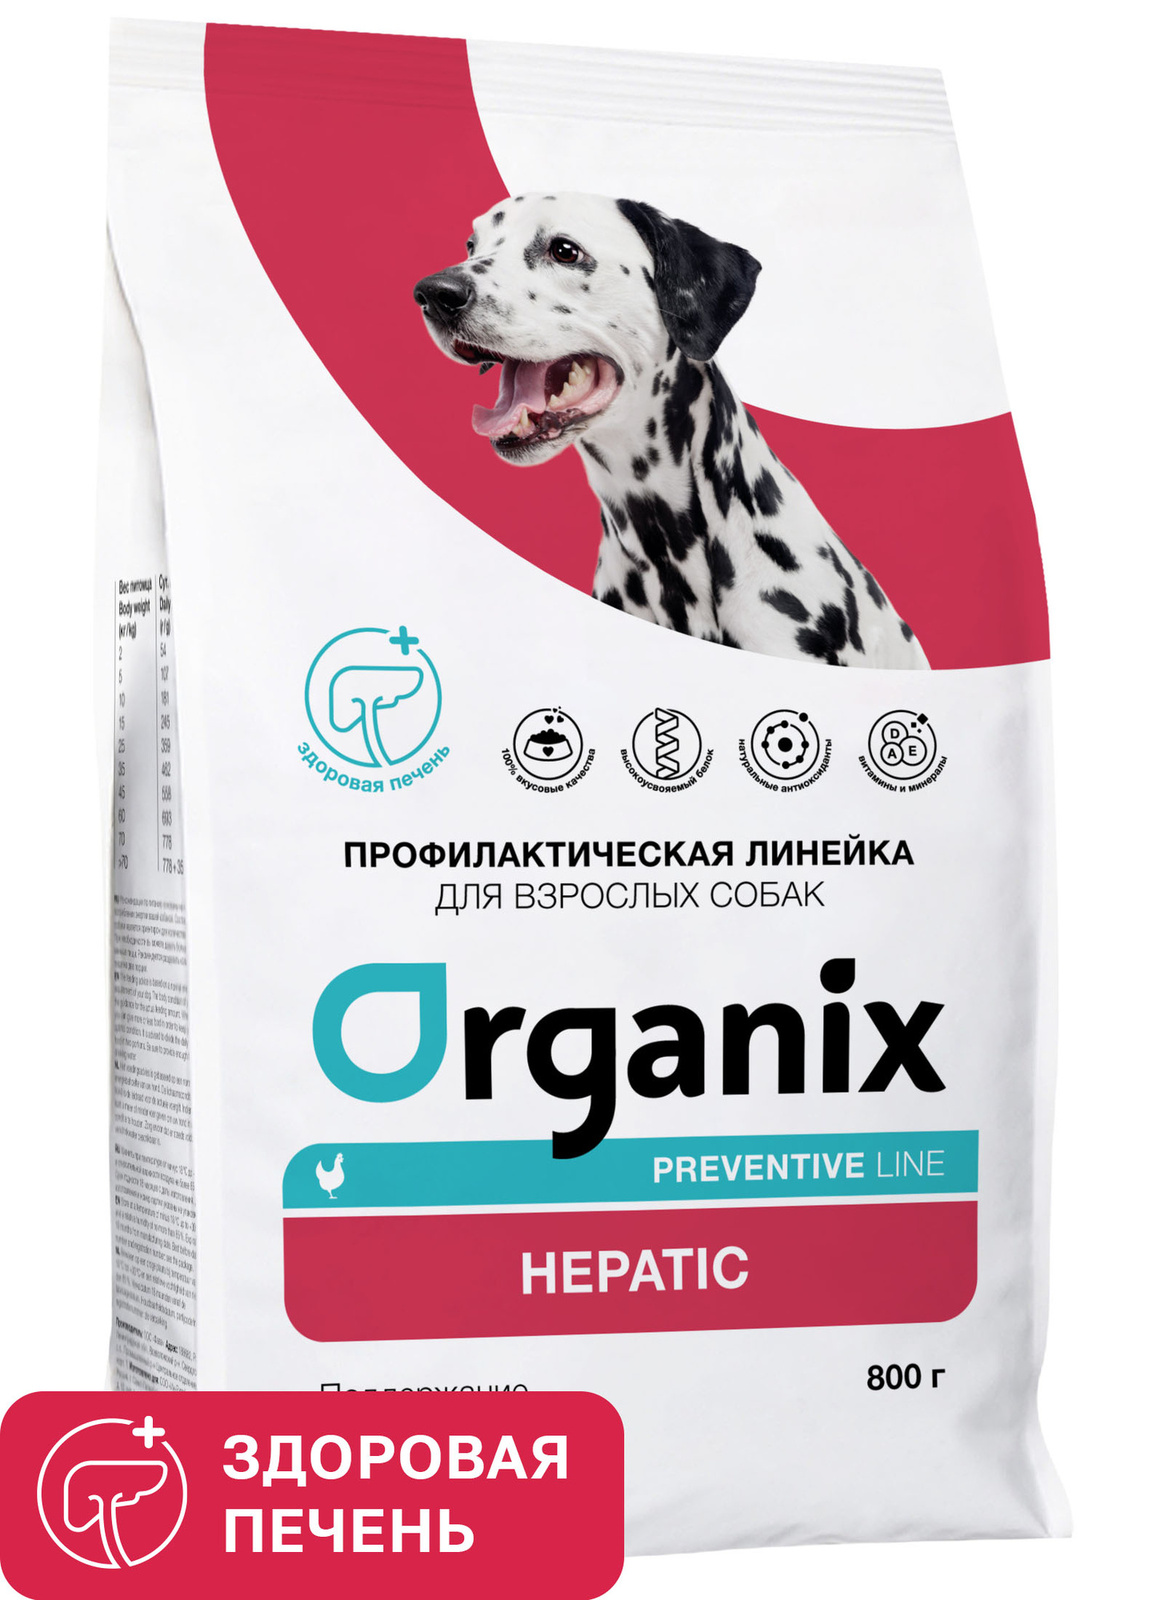 Organix Preventive Line Organix Preventive Line hepatic сухой корм для собак Поддержание здоровья печени (800 г) фото